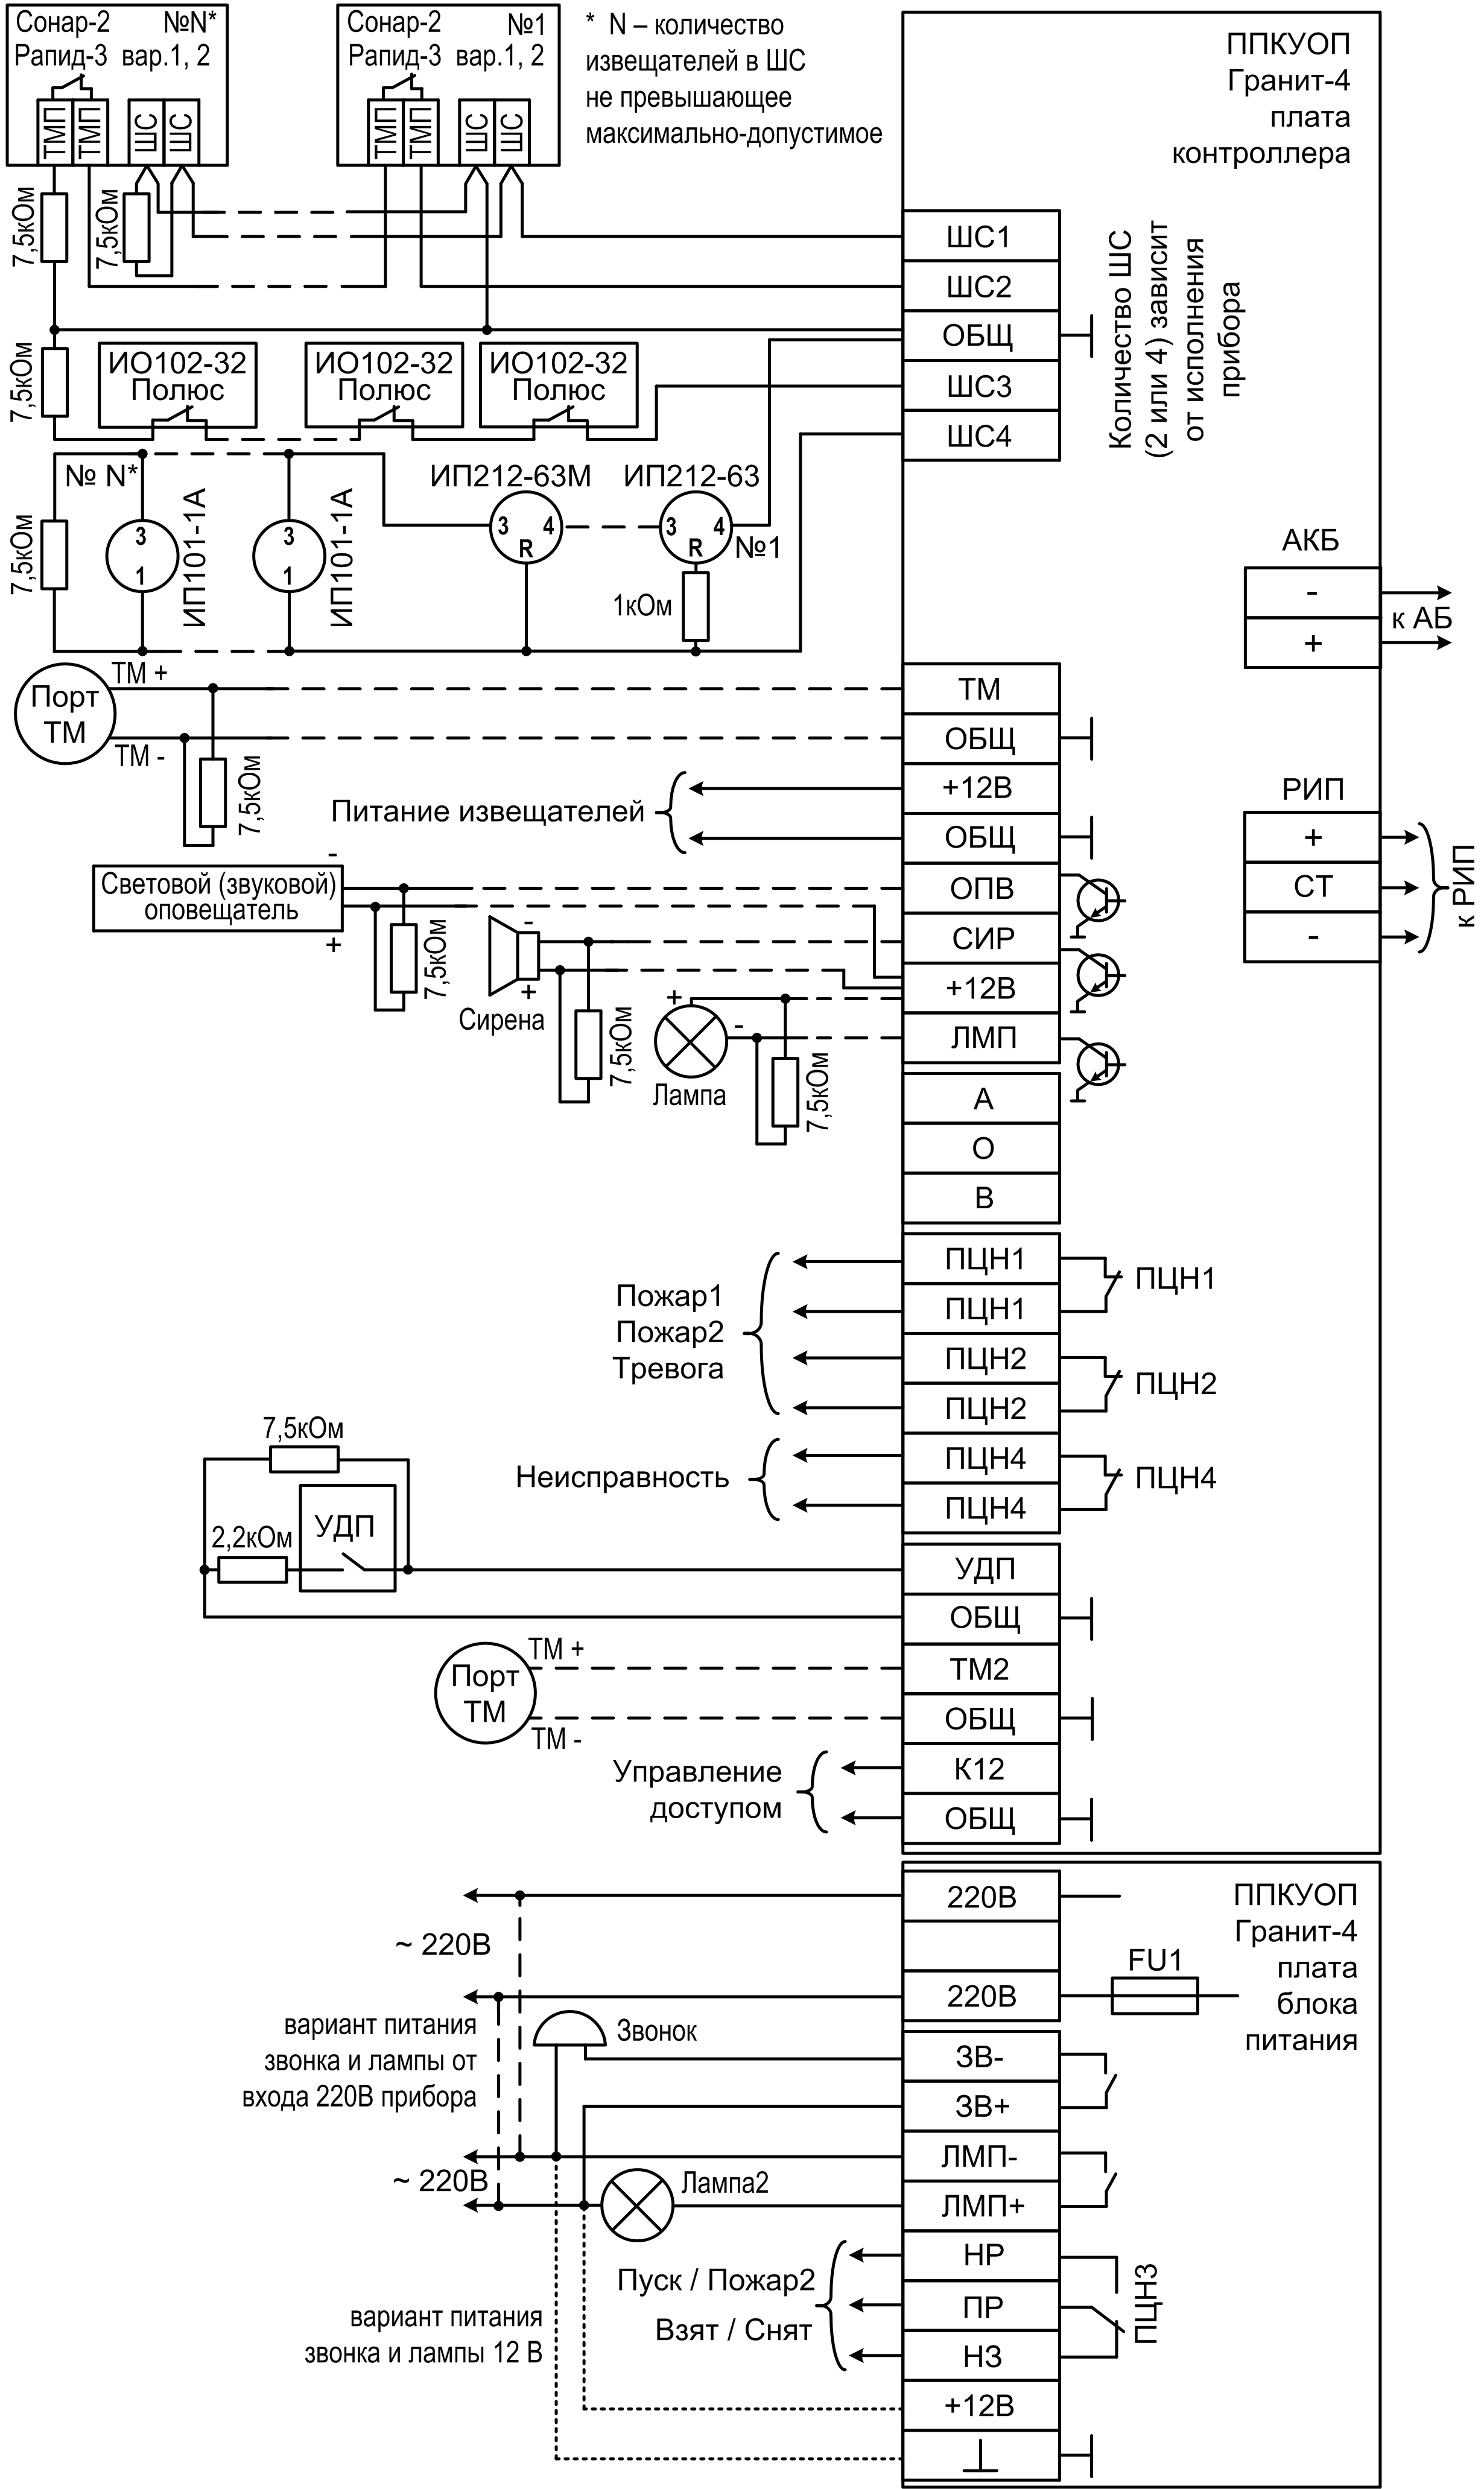 Принципиальная электросхема крана РДК-250-II